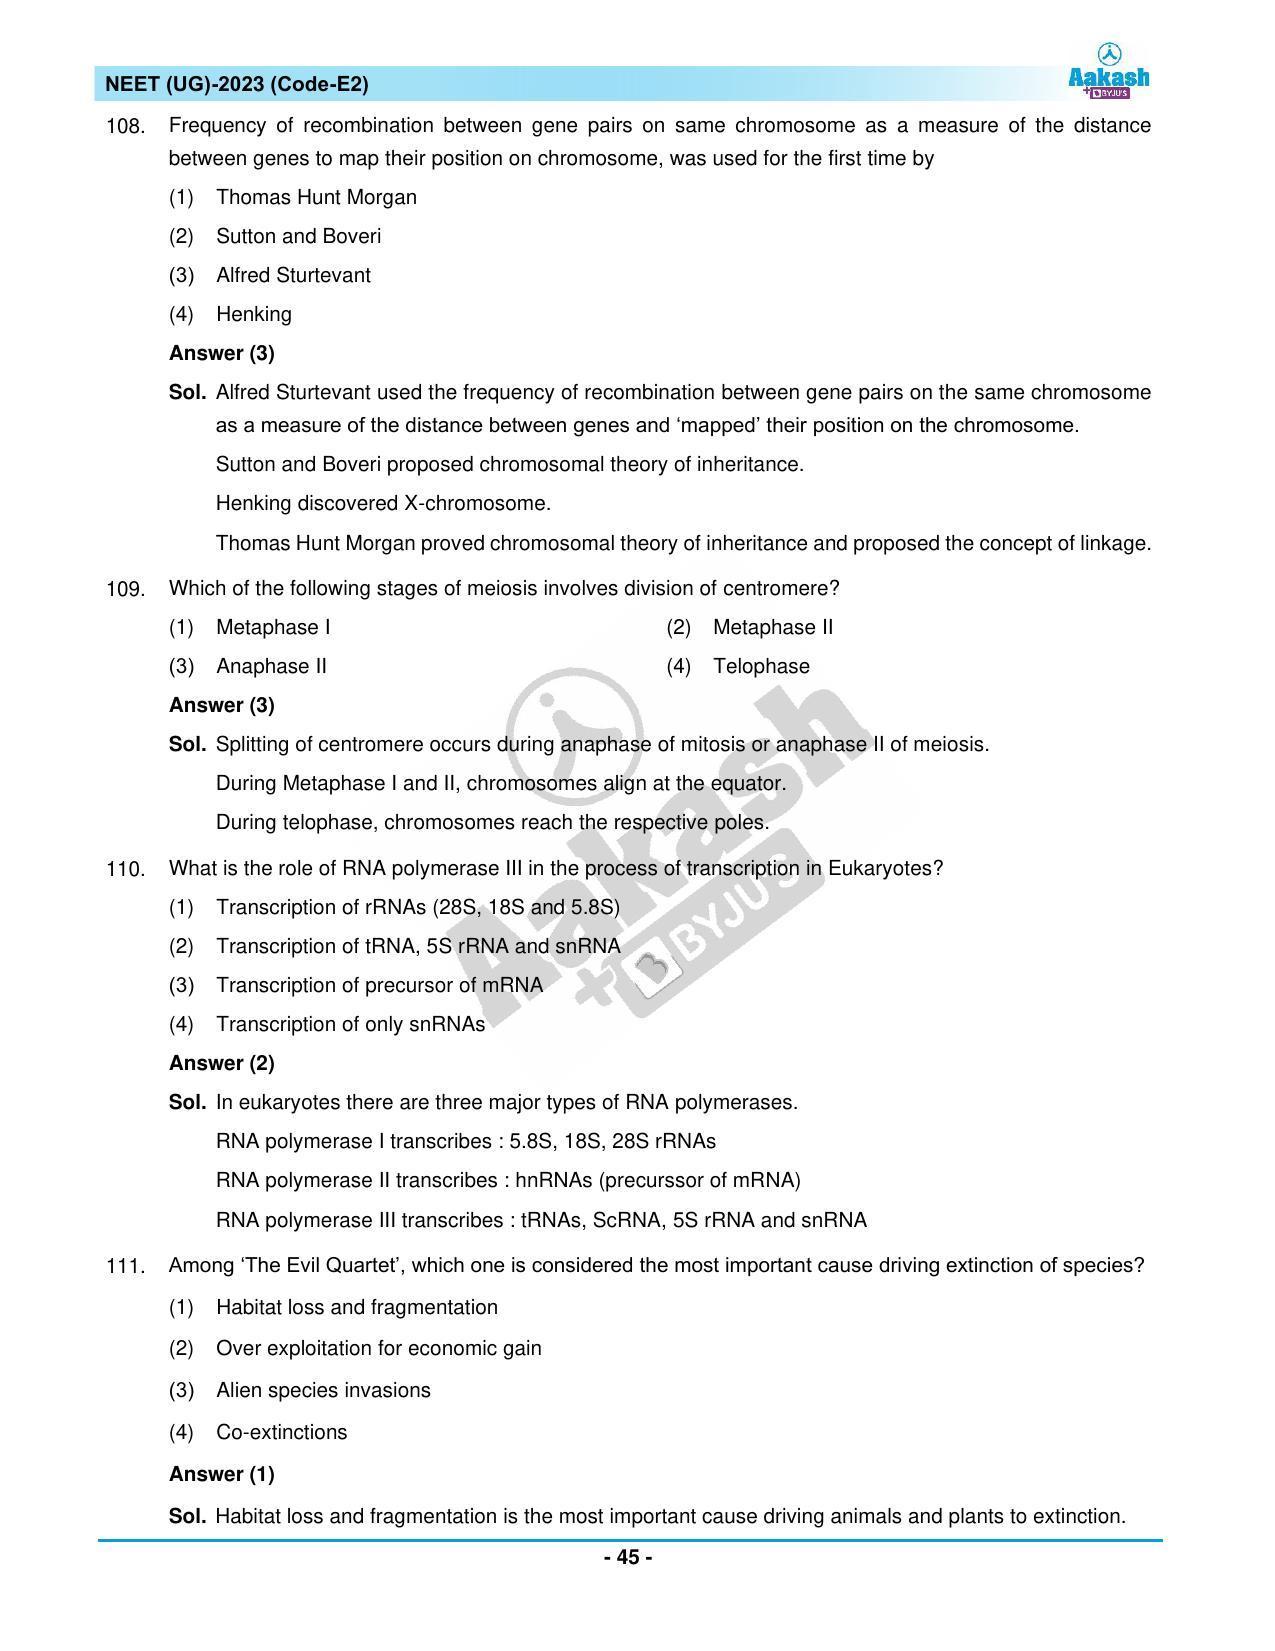 NEET 2023 Question Paper E2 - Page 45